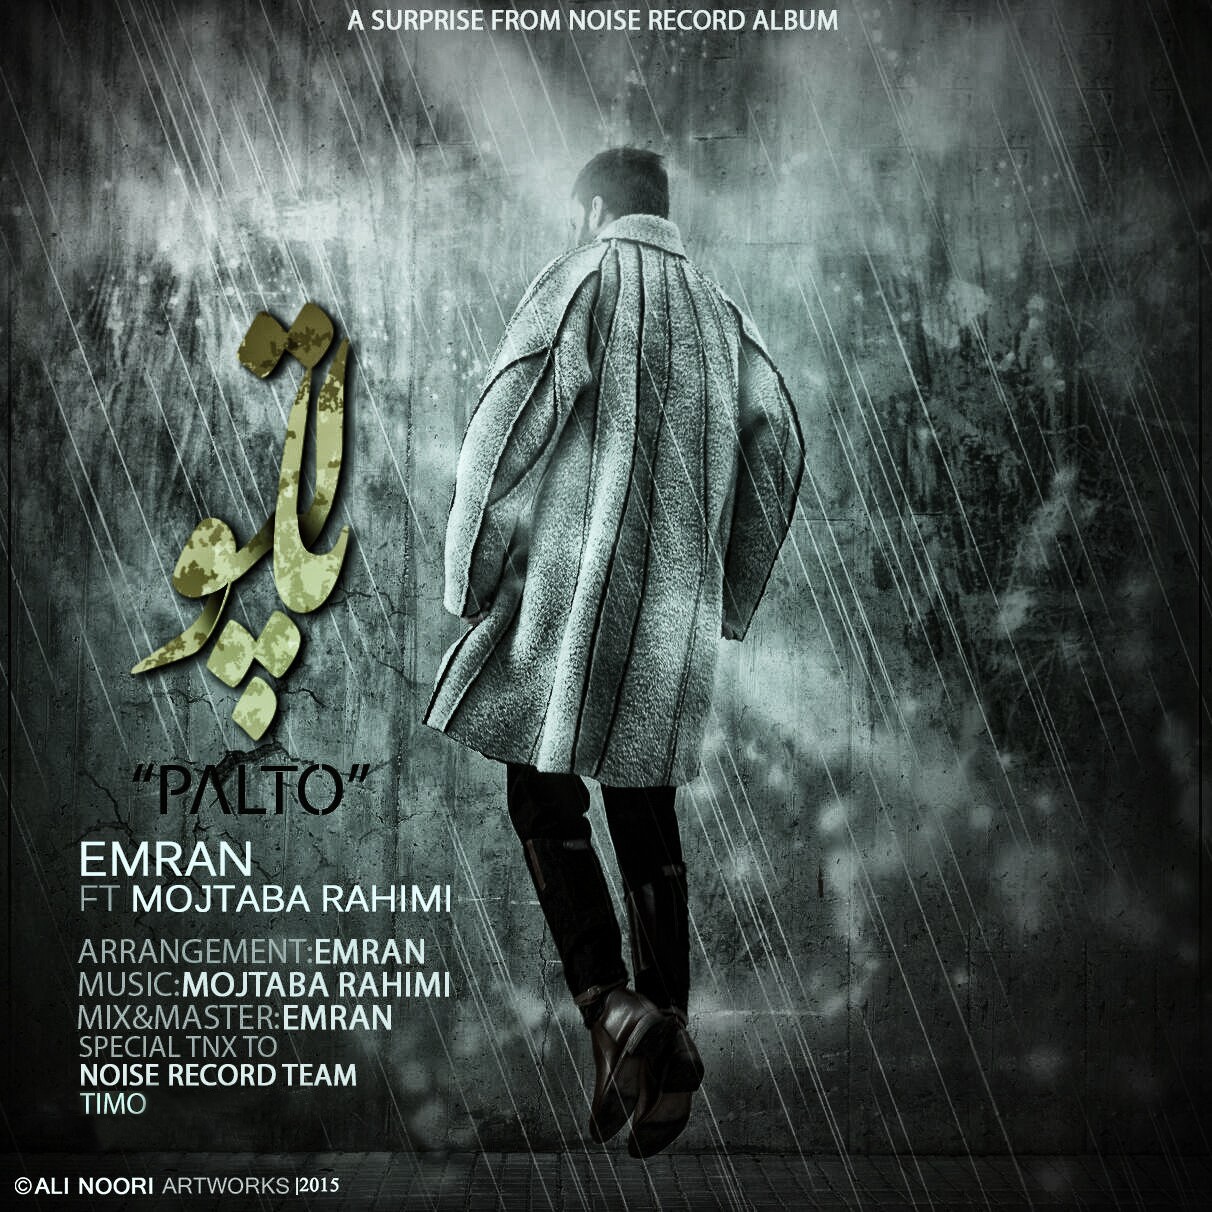  دانلود آهنگ جدید عمران - پالتو | Download New Music By Emran - Palto (feat. Mojtaba Rahimi)